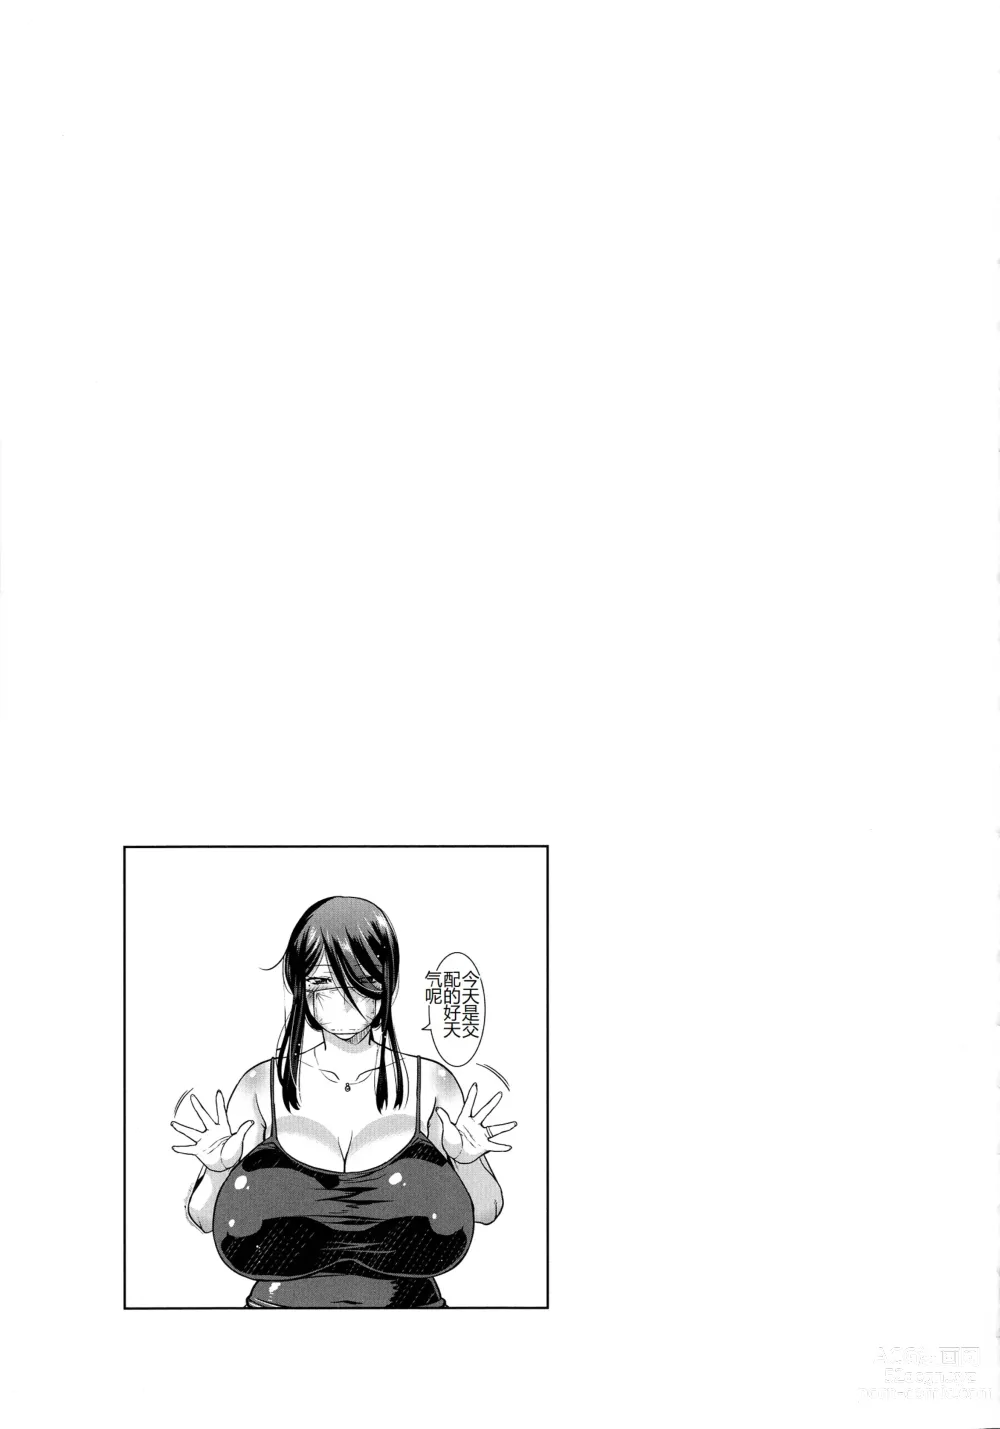 Page 192 of manga Kobibiyori no Midarazuma